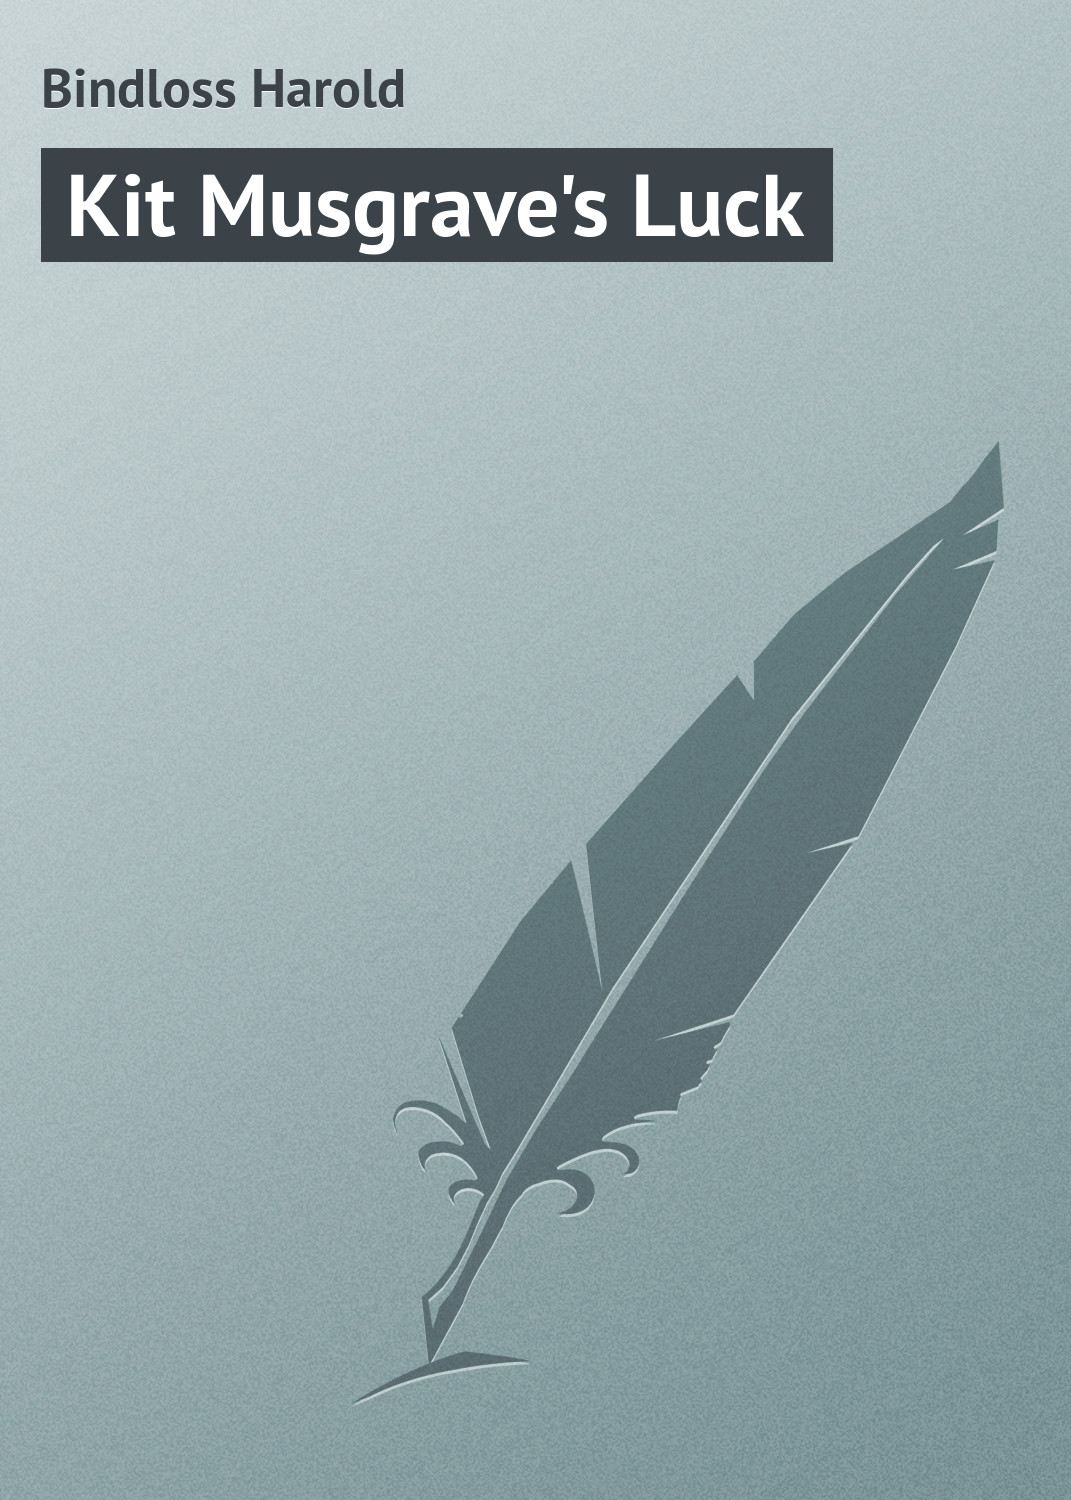 Книга Kit Musgrave's Luck из серии , созданная Harold Bindloss, может относится к жанру Зарубежная классика. Стоимость электронной книги Kit Musgrave's Luck с идентификатором 23166579 составляет 5.99 руб.